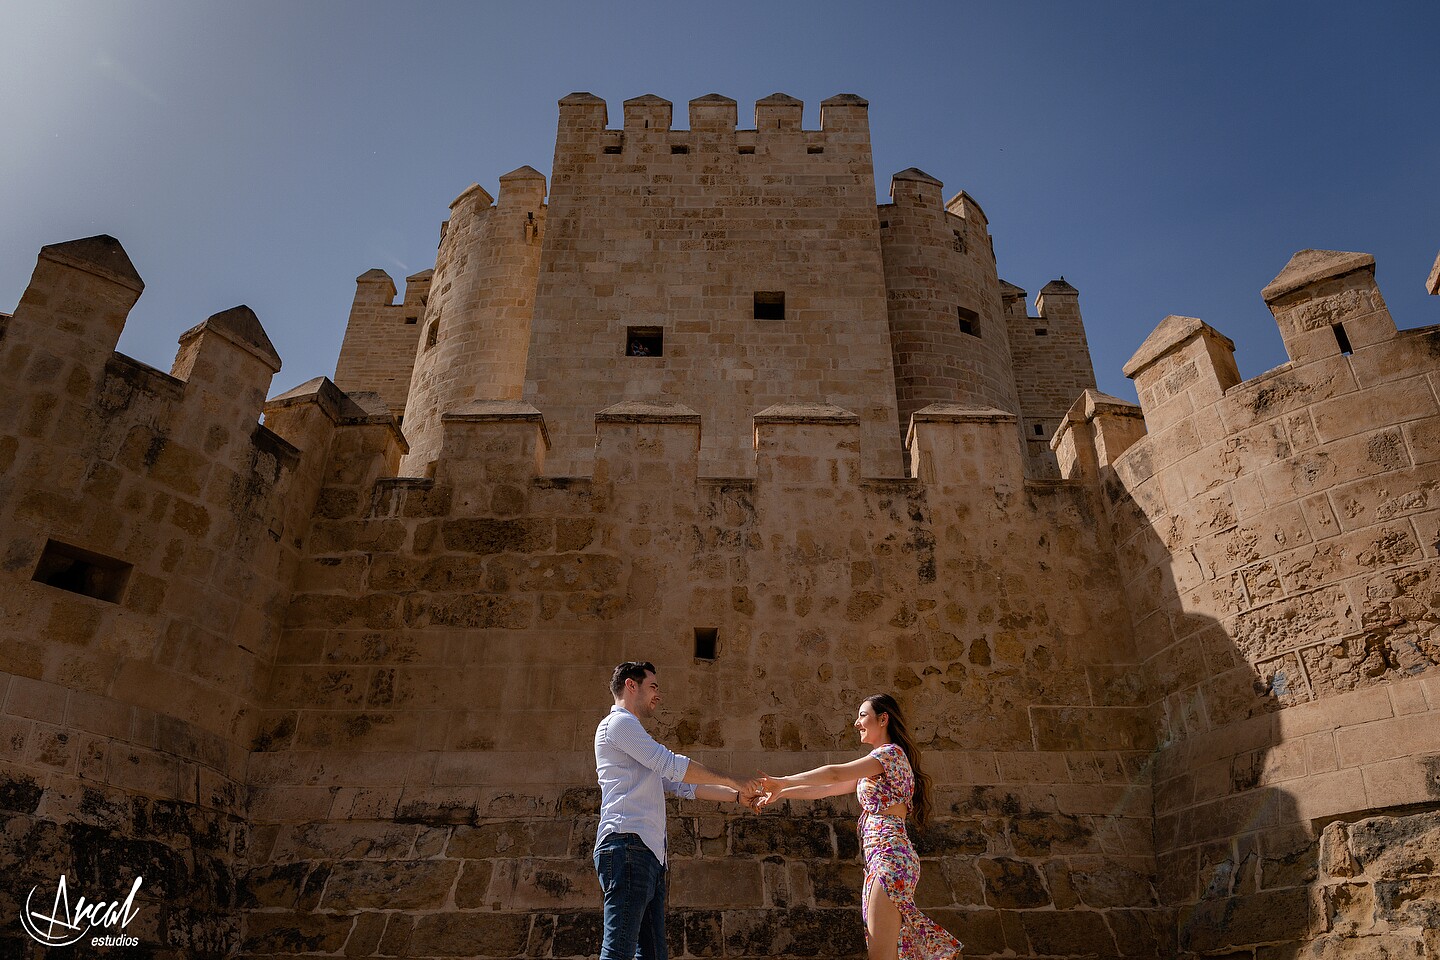 008_Ana y Álvaro pre boda en puente romano de córdoba, novios en torre de la calahorra, patios cordobeses y calleja de las flores.JPG